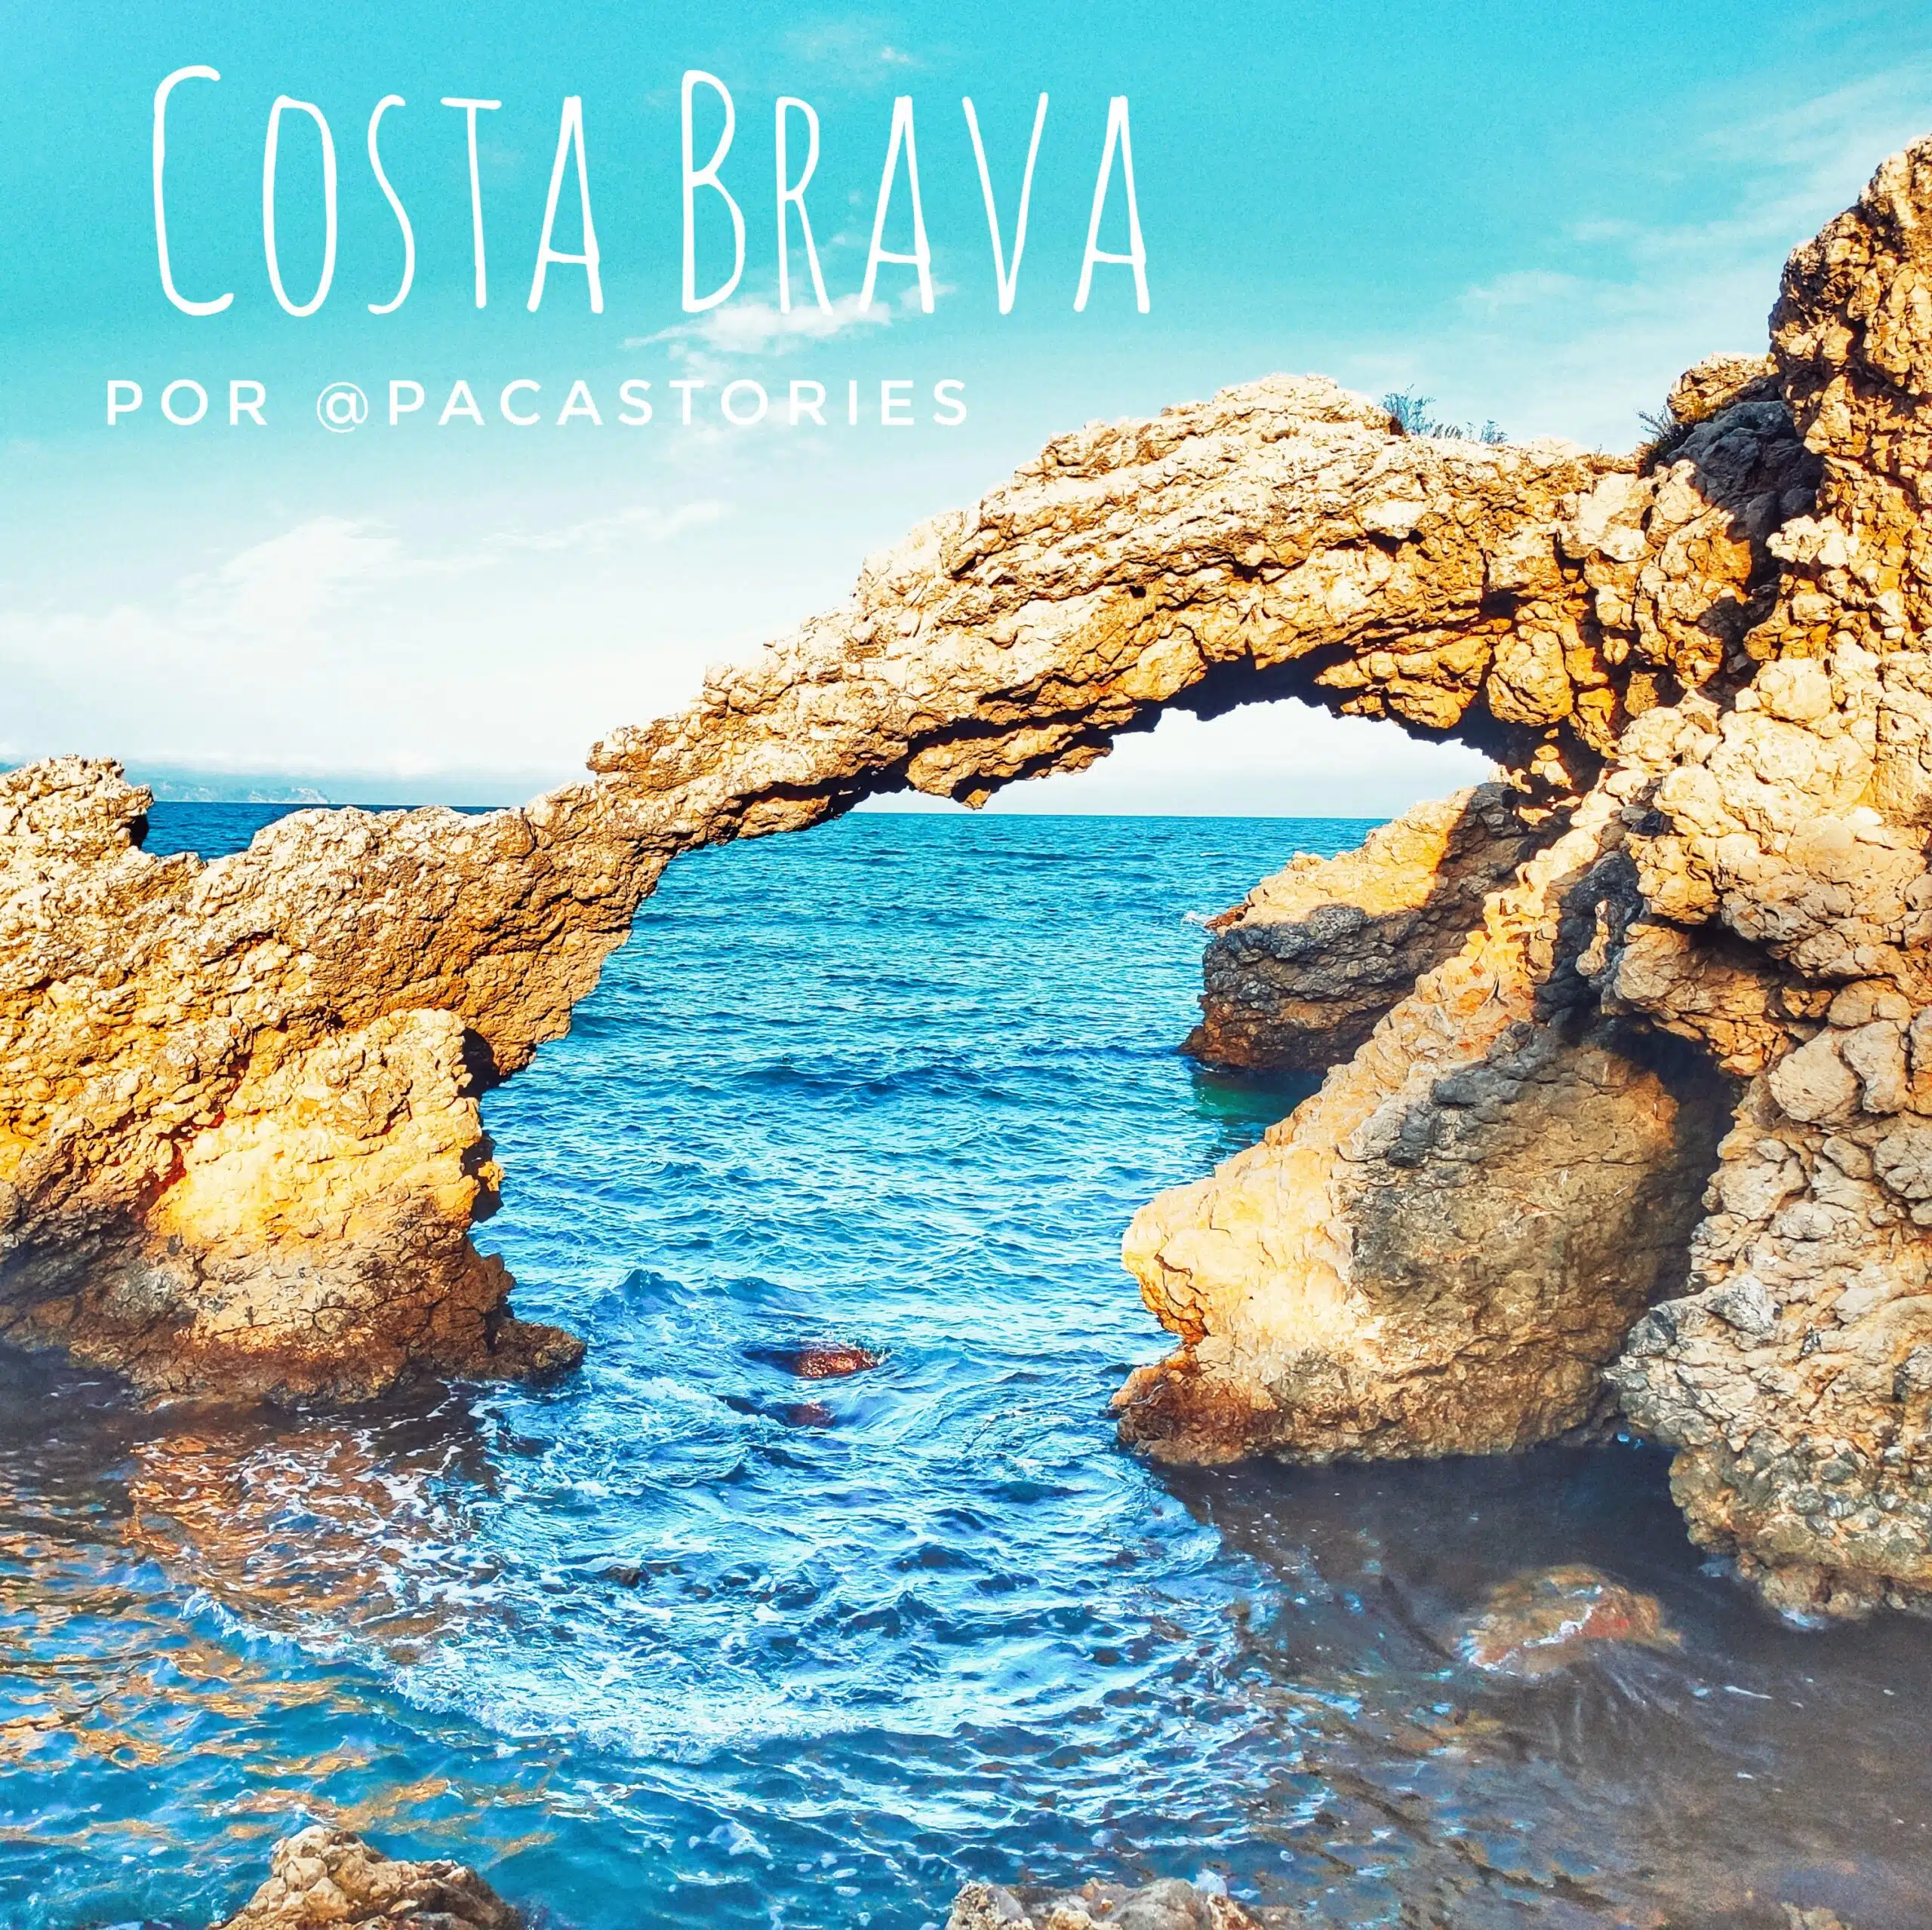 In questo momento stai vedendo 17 incredibili destinazioni per scoprire la Costa Brava in camper dagli youtuber Paca Stories